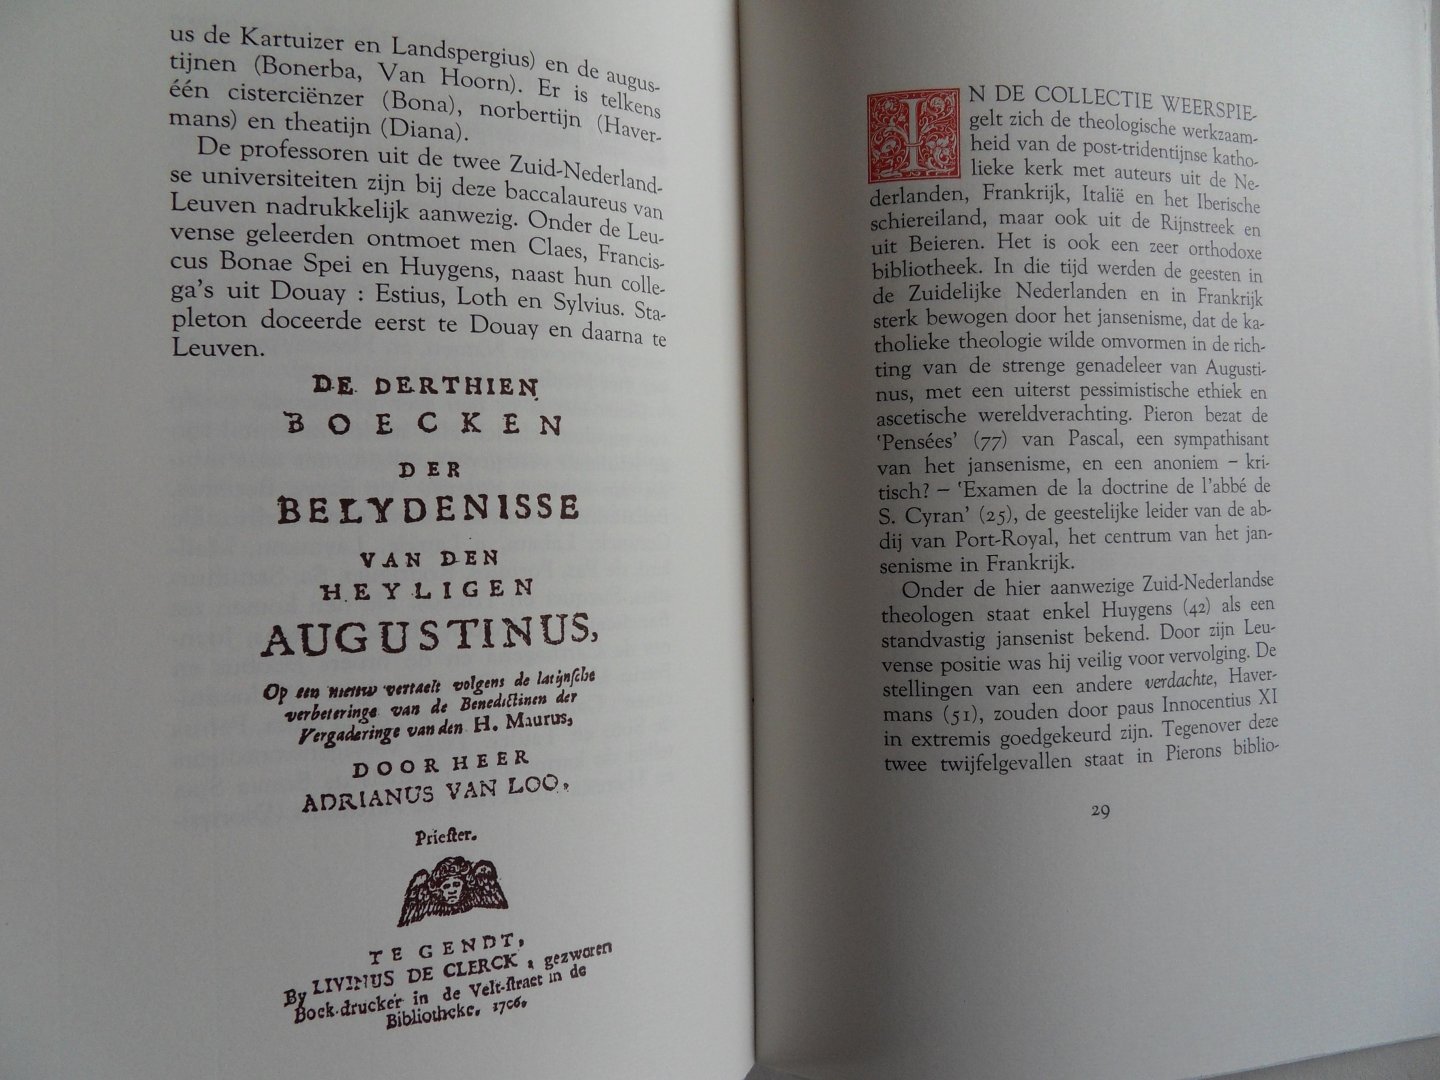 Waterschoot, Werner [ met een inleiding van ] [ GESIGNEERD door de inleider ]. - Catalogue van Boecken. - De veiling van de bibliotheek van Jacobus Pieron op 27 juni 1709. [ Genummerd exemplaar 36 / 60 = van de Arabisch genummerde exemplaren].